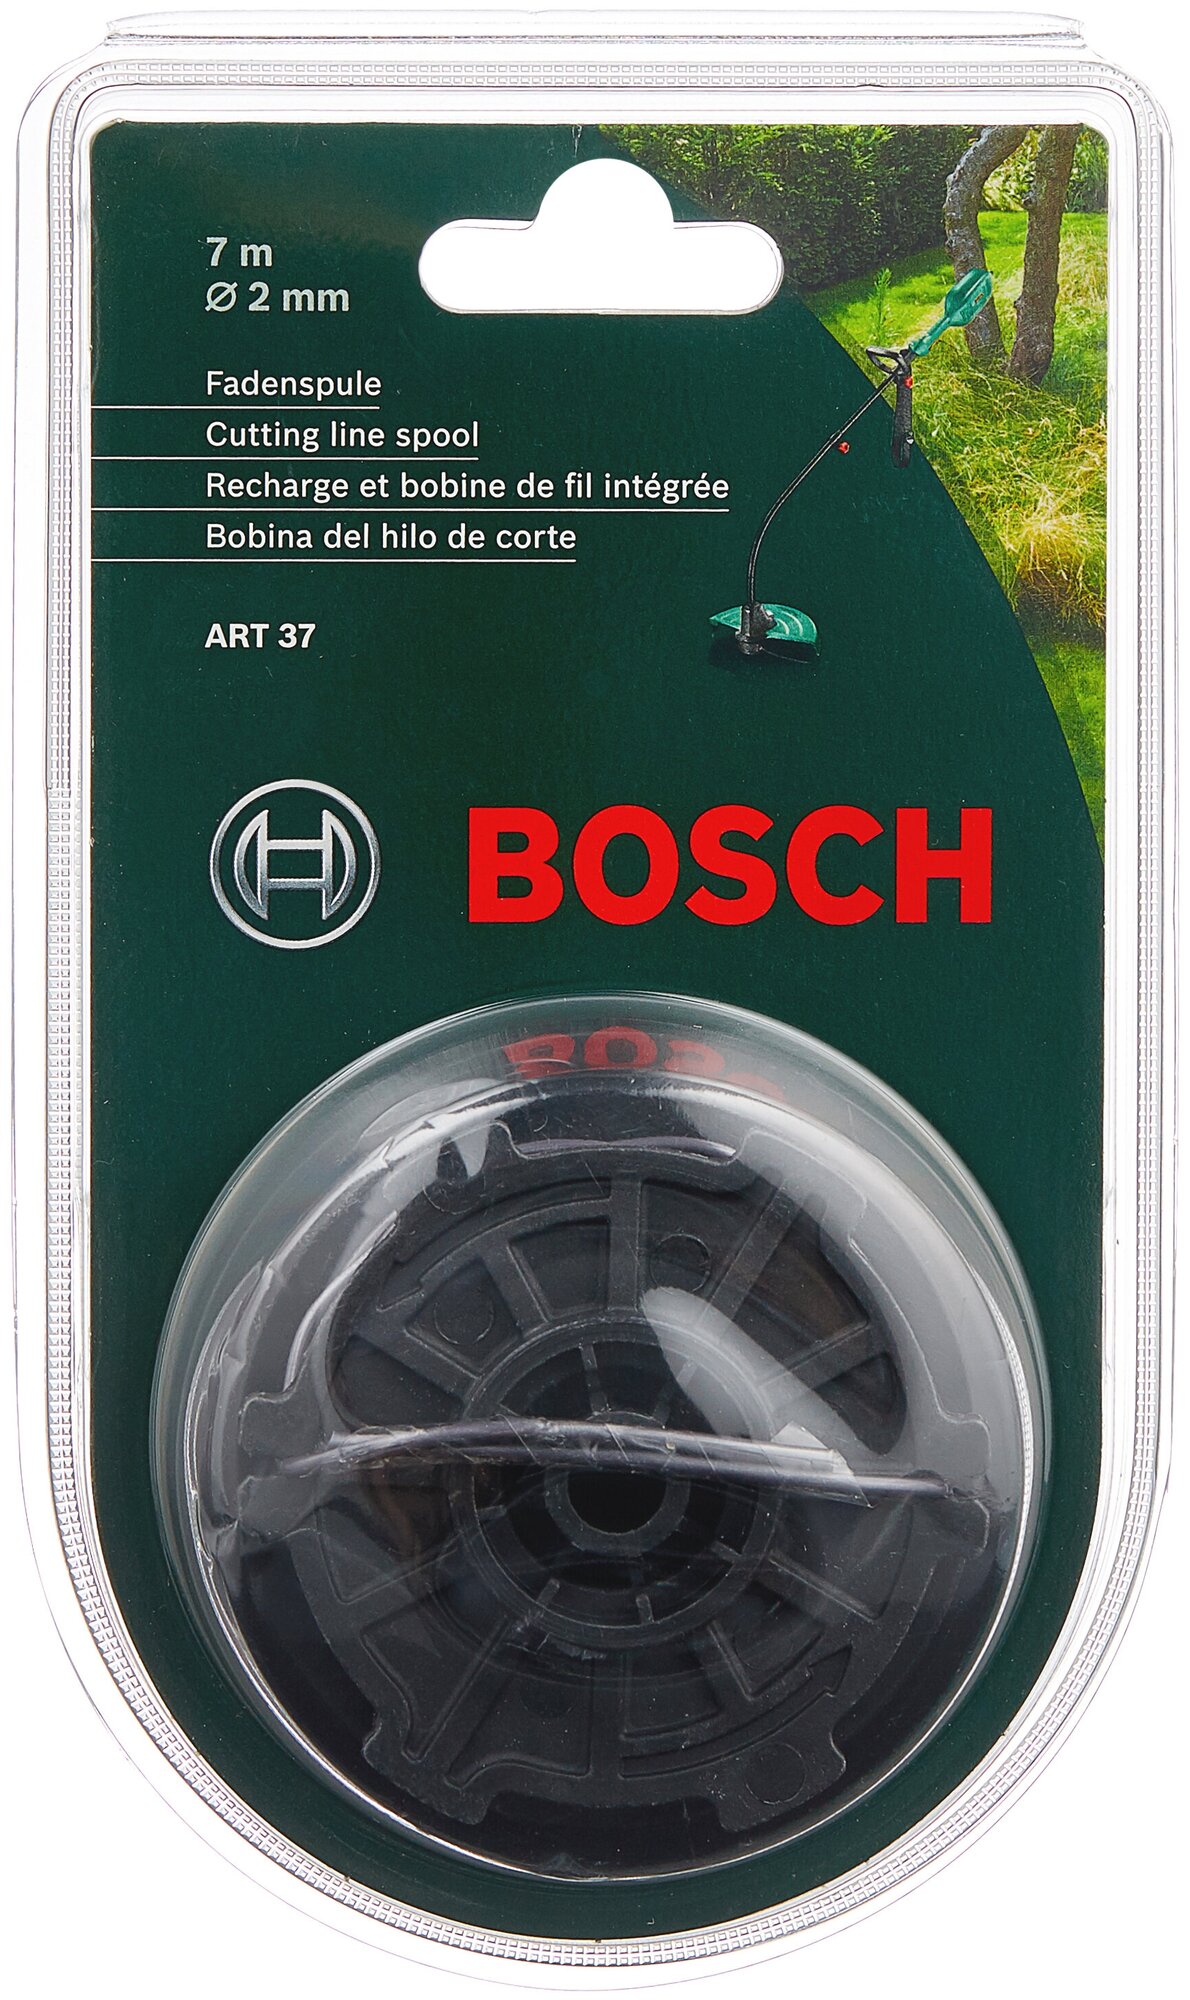     ART 37/35 2  4 Bosch F016800309 539